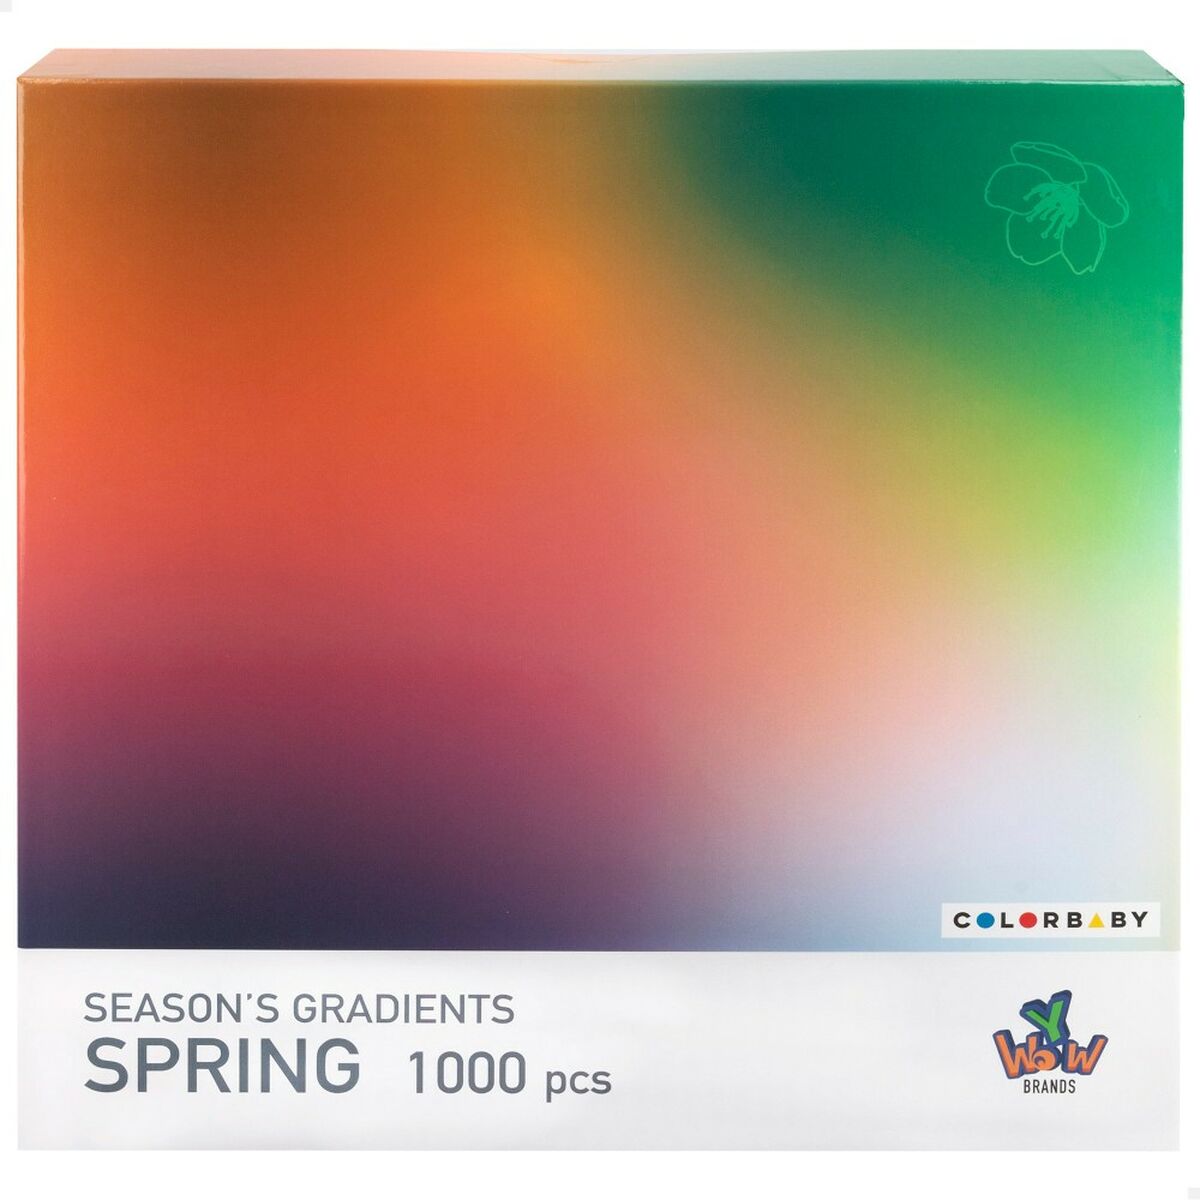 Puzzle Colorbaby Season's Gradients Spring 68 x 50 cm (6 Units)